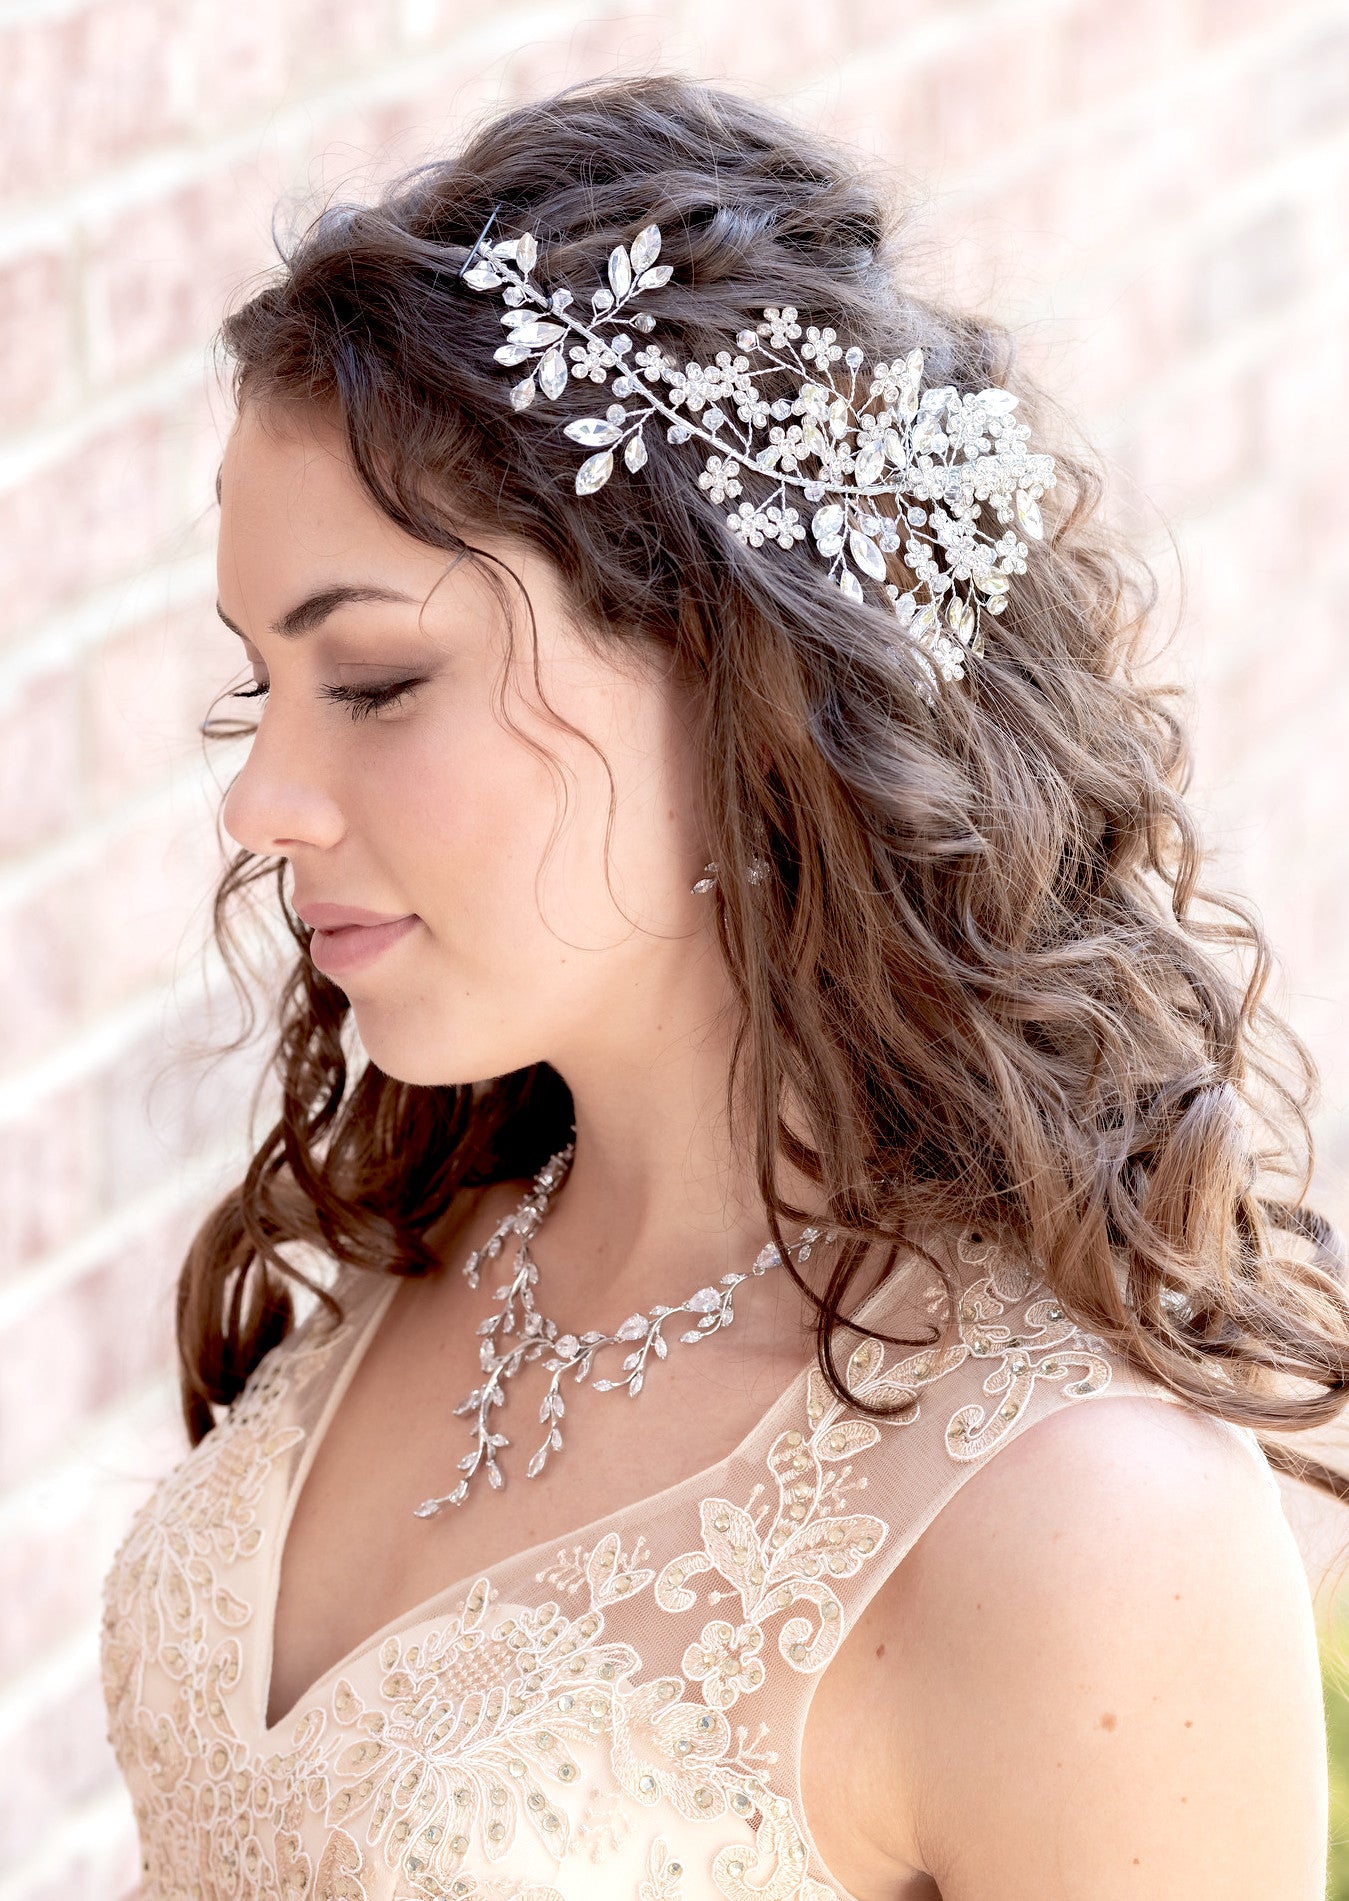 Daniela- Dazzling set of 2 crystal floral wedding headpiece